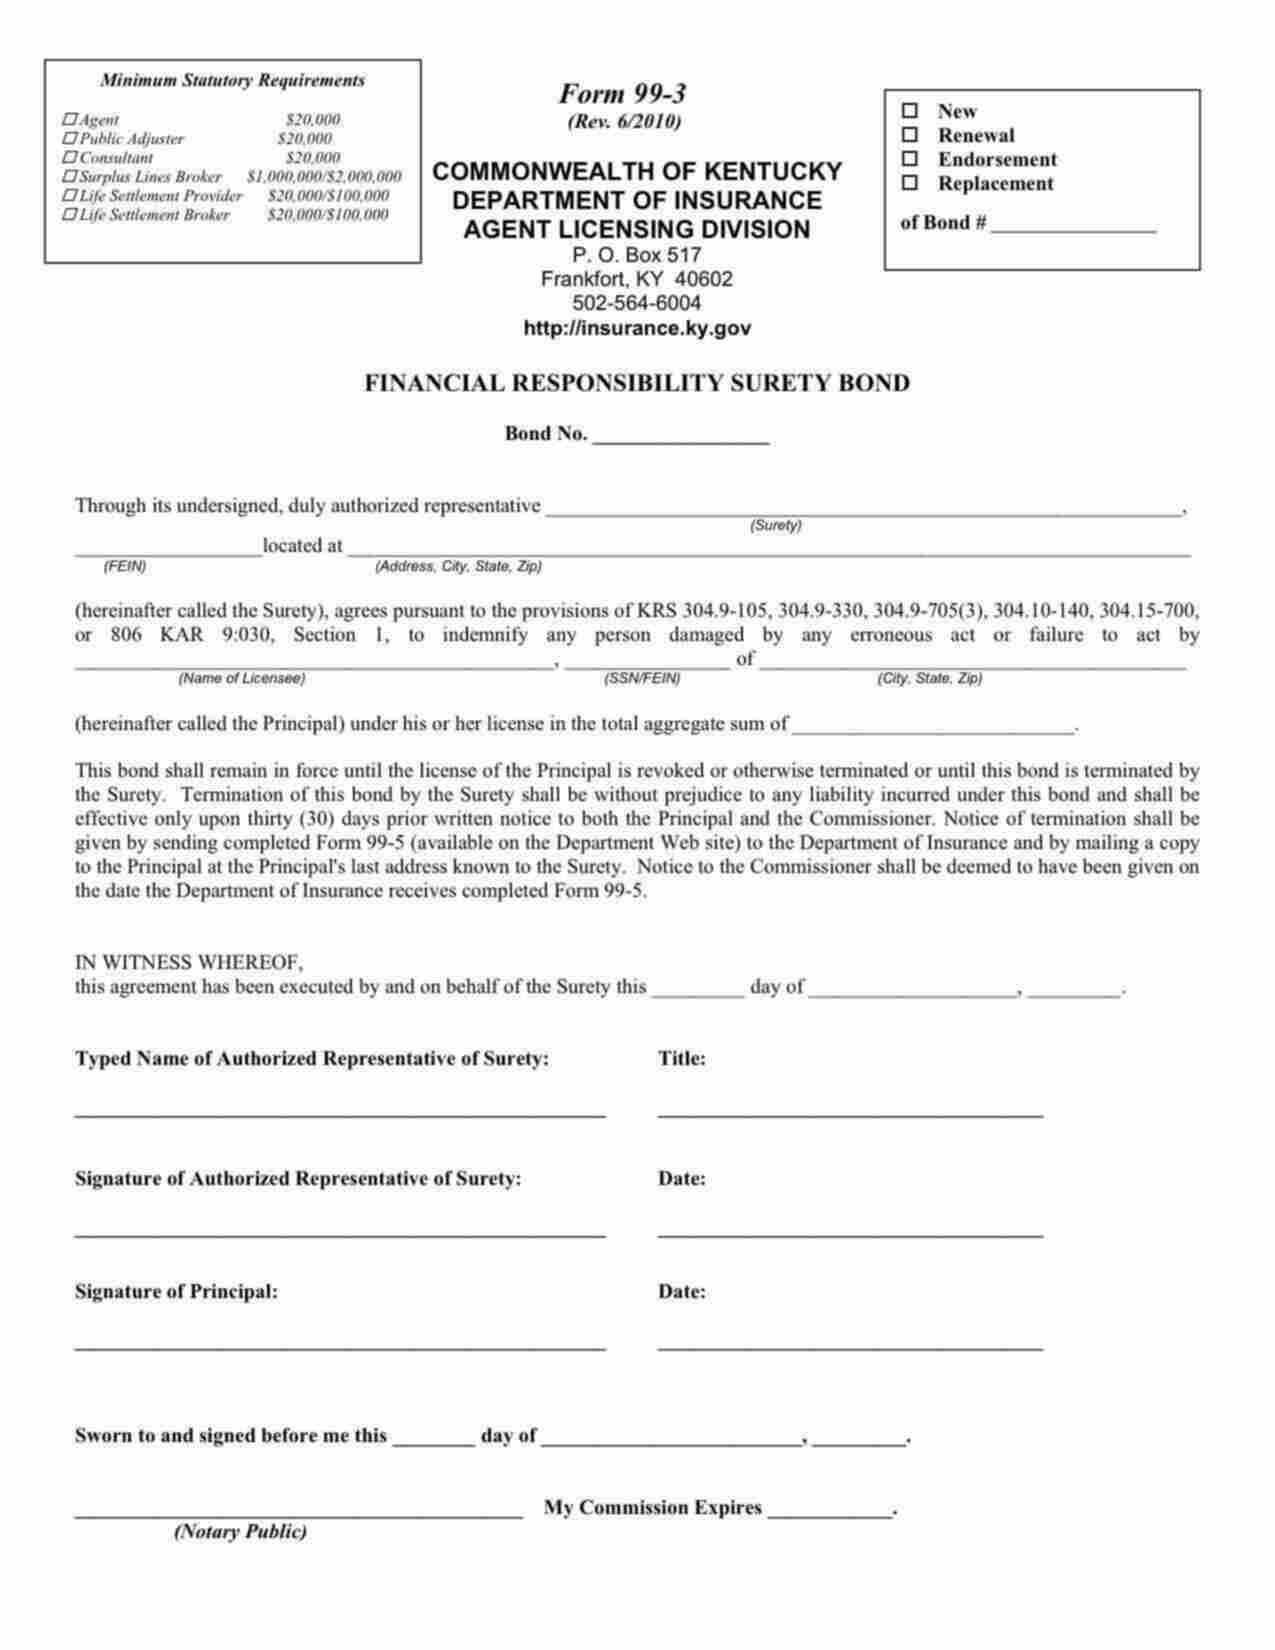 Kentucky Life Settlement Broker Bond Form